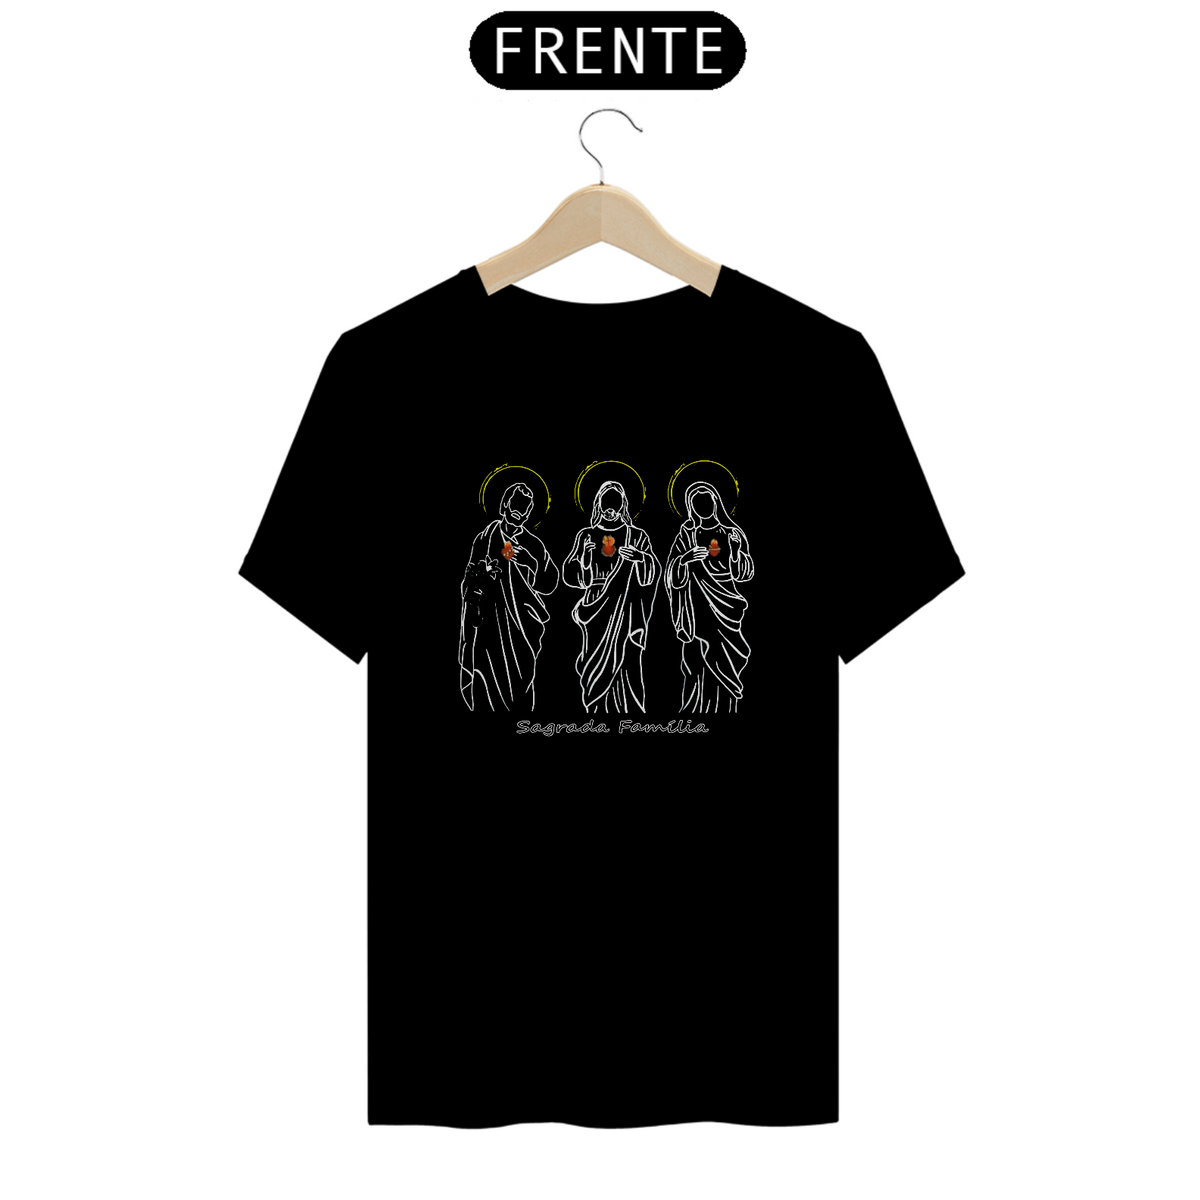 Nome do produto: Camiseta Sagrada Família